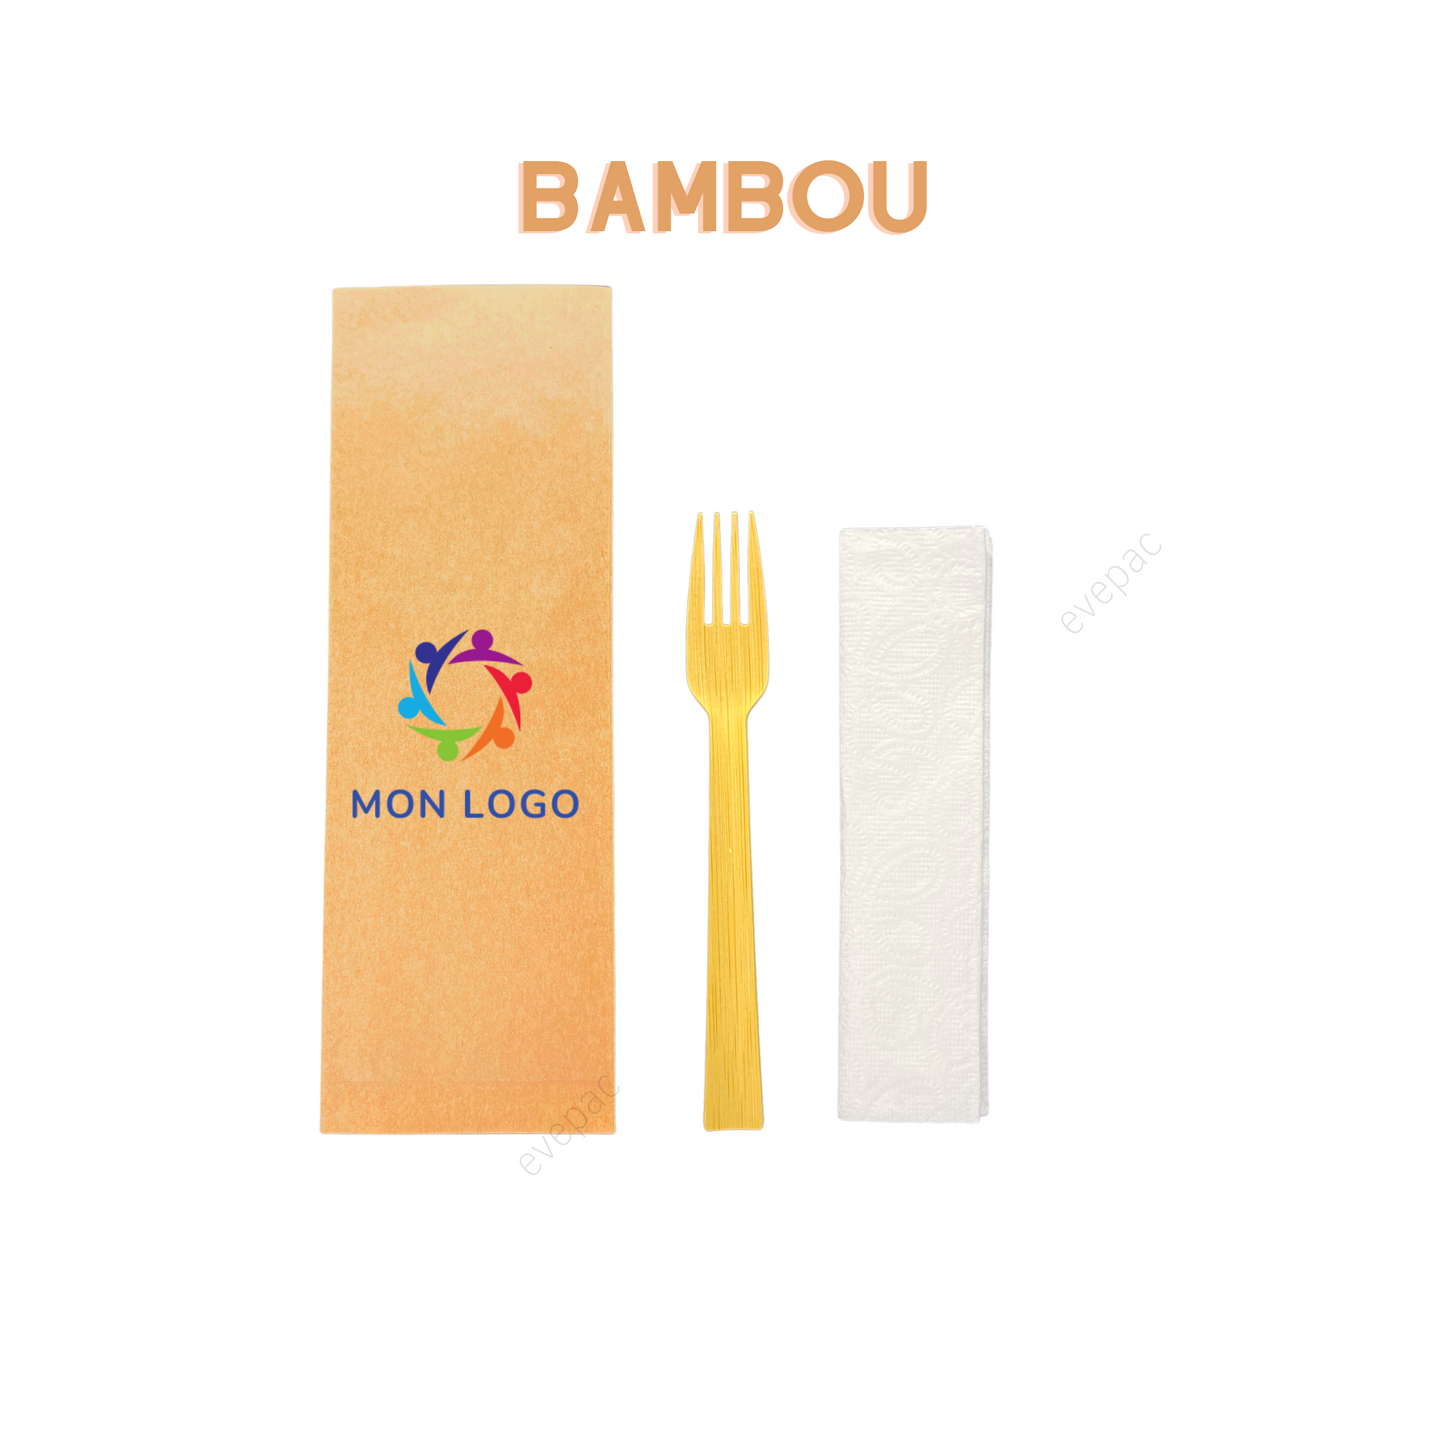 Kit couverts bambou personnalisé (Fourchette, Serviette en papier)